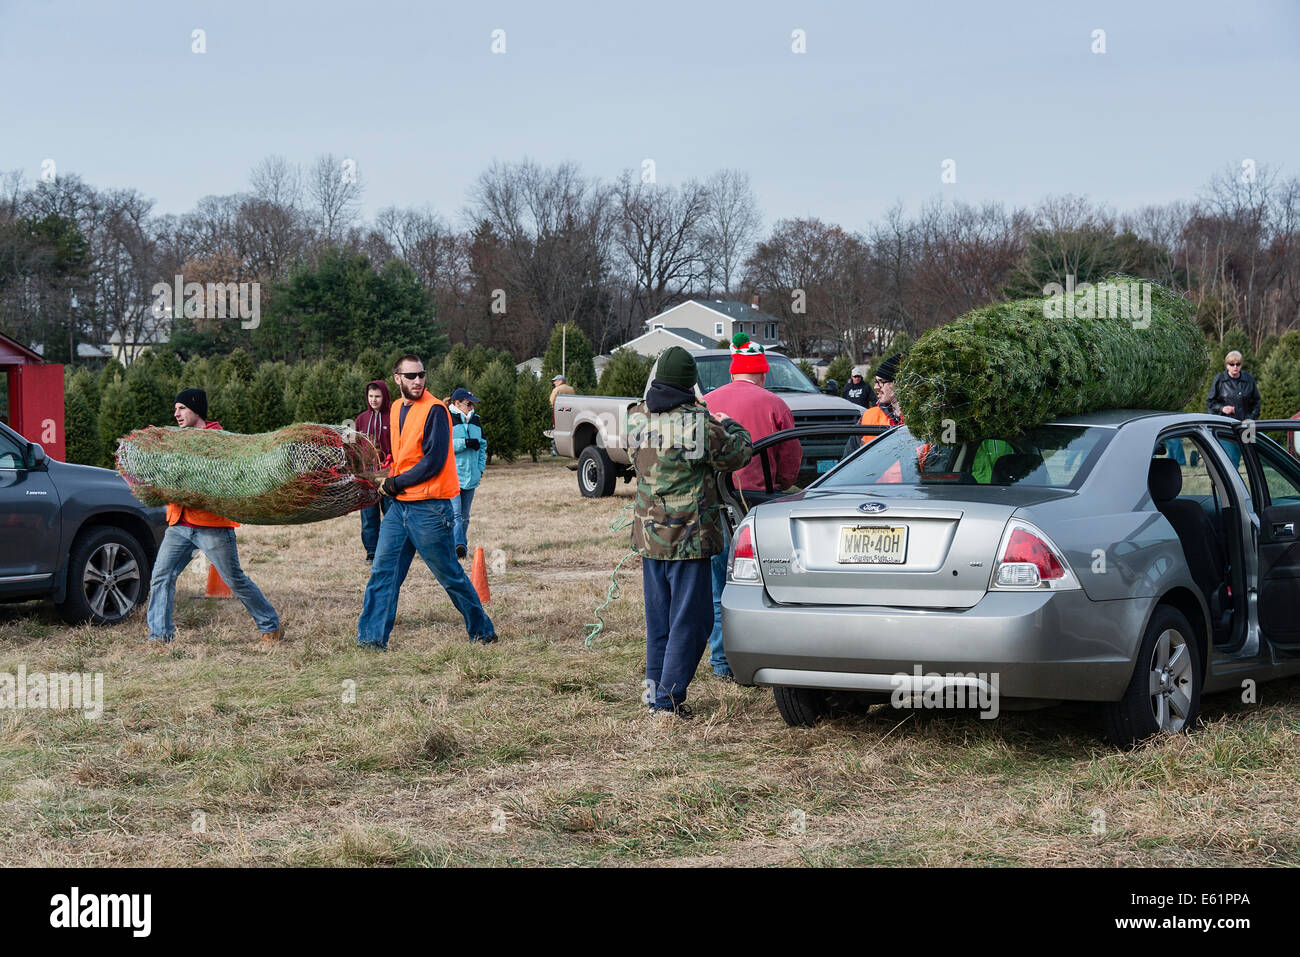 Los clientes seguro recién cortado árboles seleccionados en una granja de árboles de navidad, Nueva Jersey, EE.UU. Foto de stock